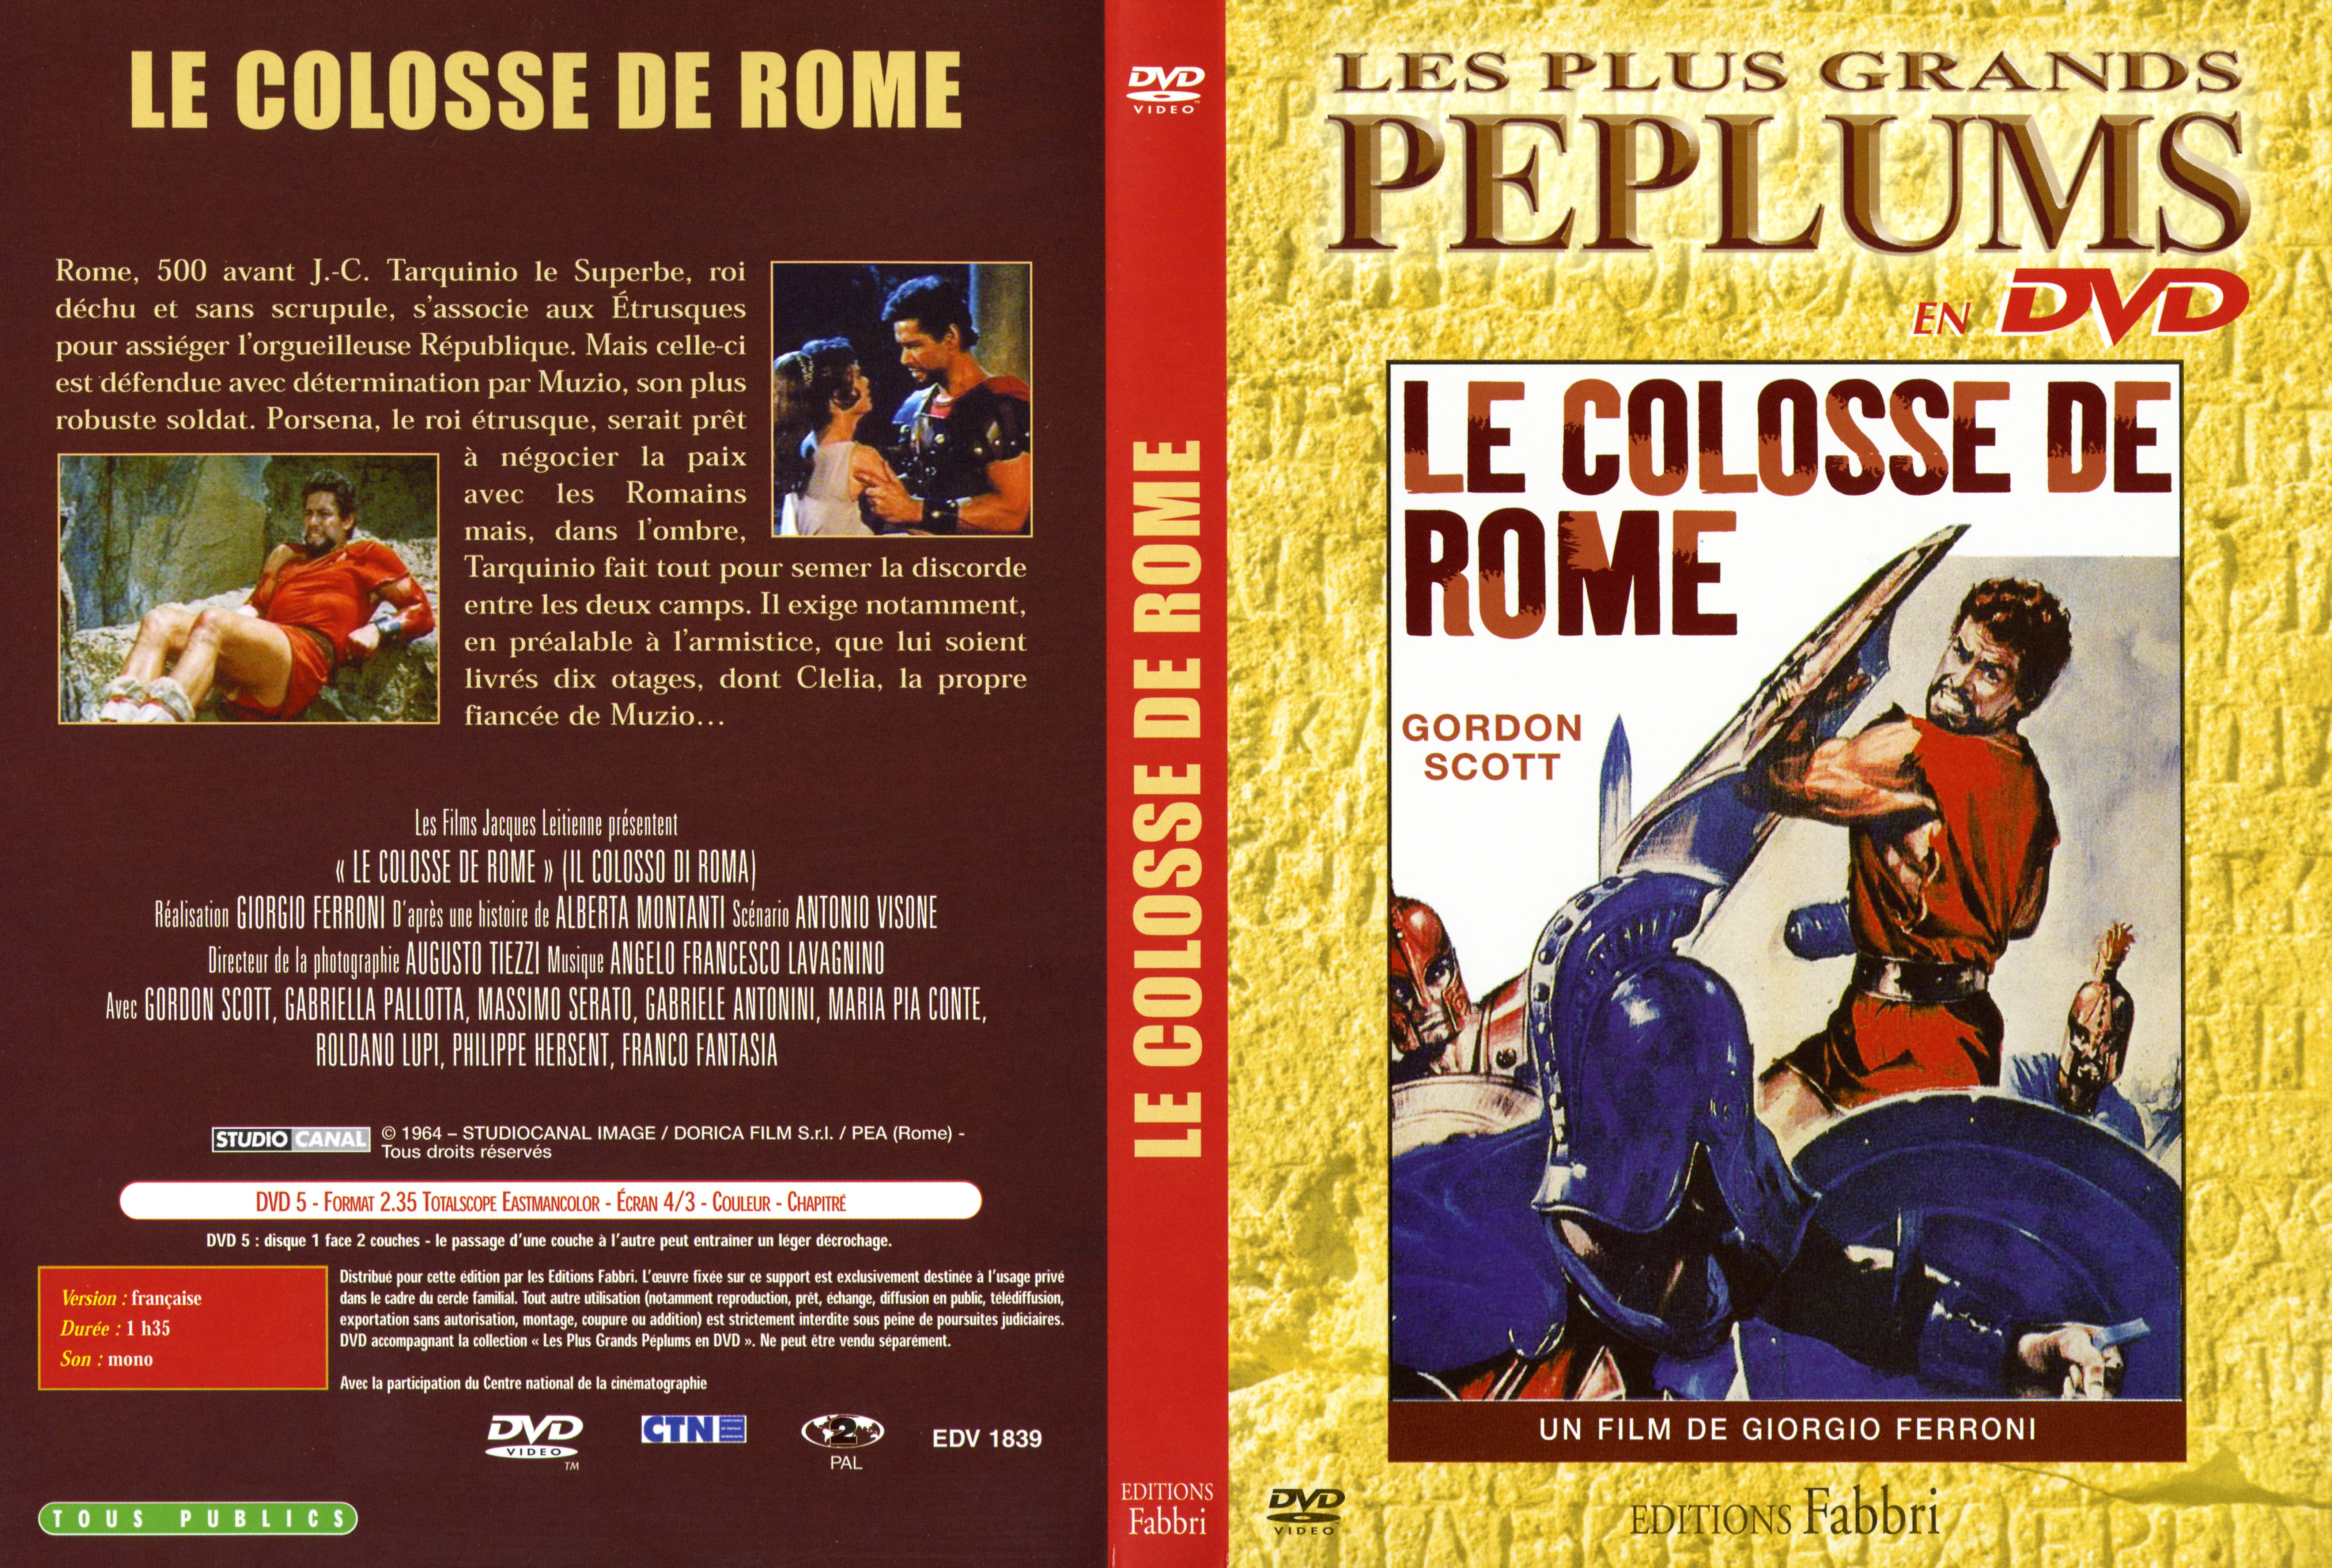 Jaquette DVD Le colosse de rome